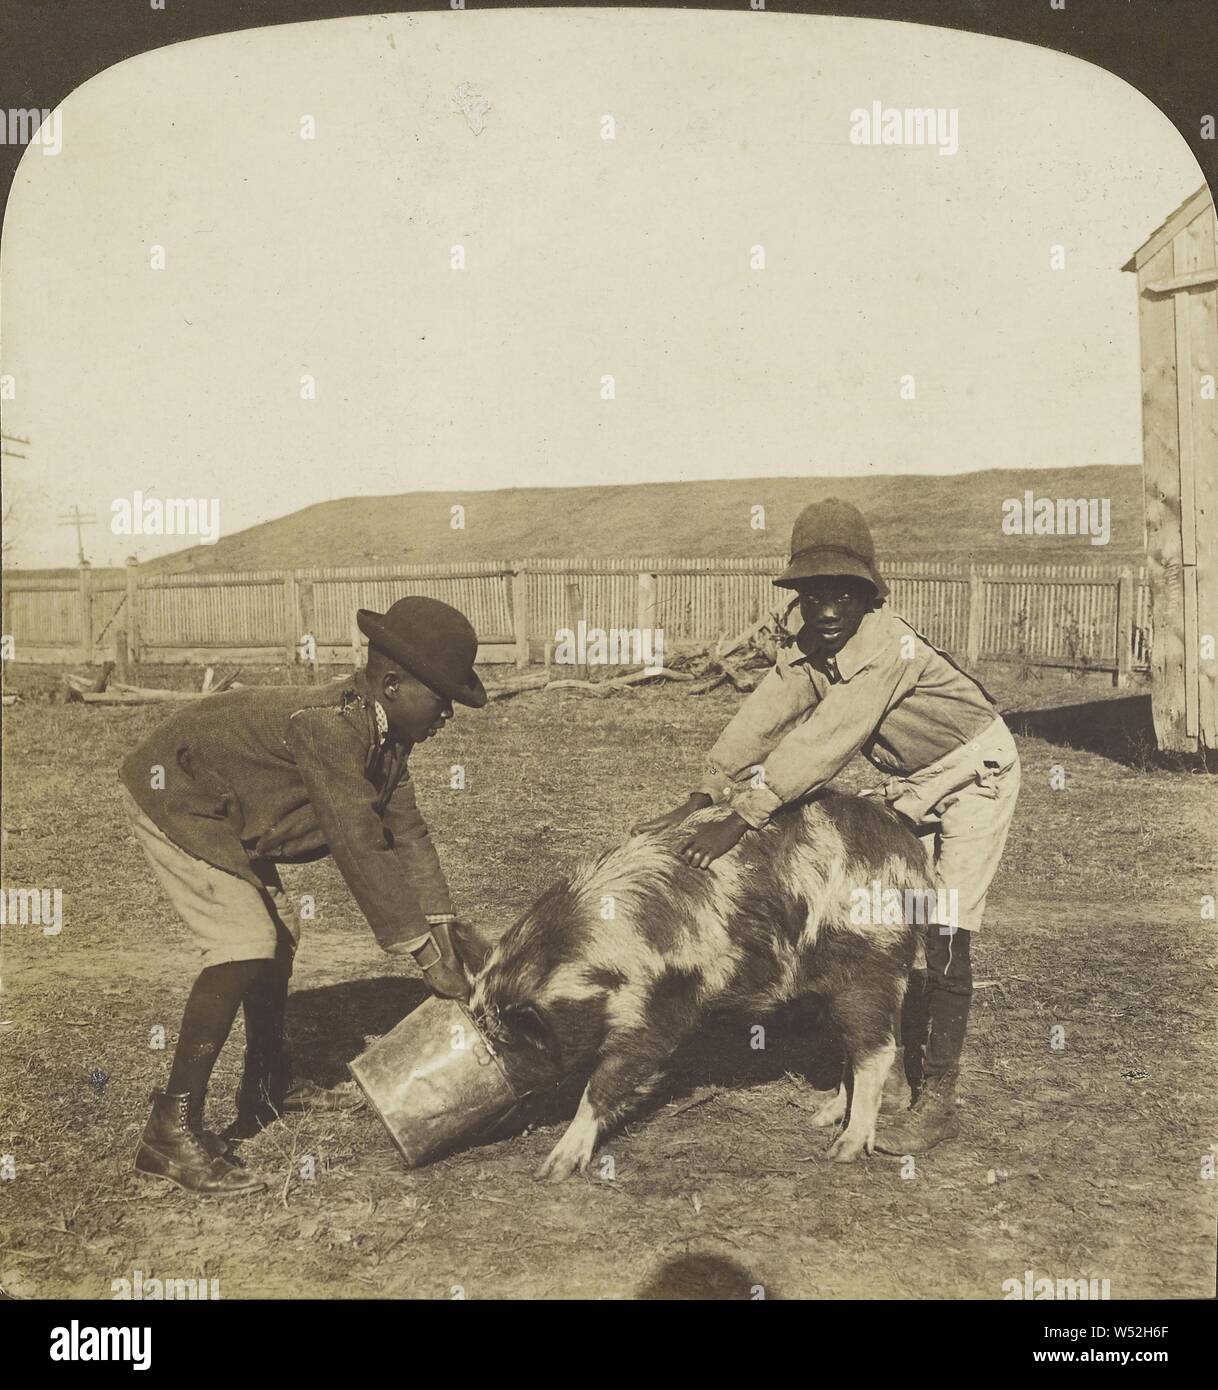 Git auf schnelle Rastus, - er getan habe es Mos'fressen., Hawley C. White Company, 1901, Silbergelatineabzug Stockfoto